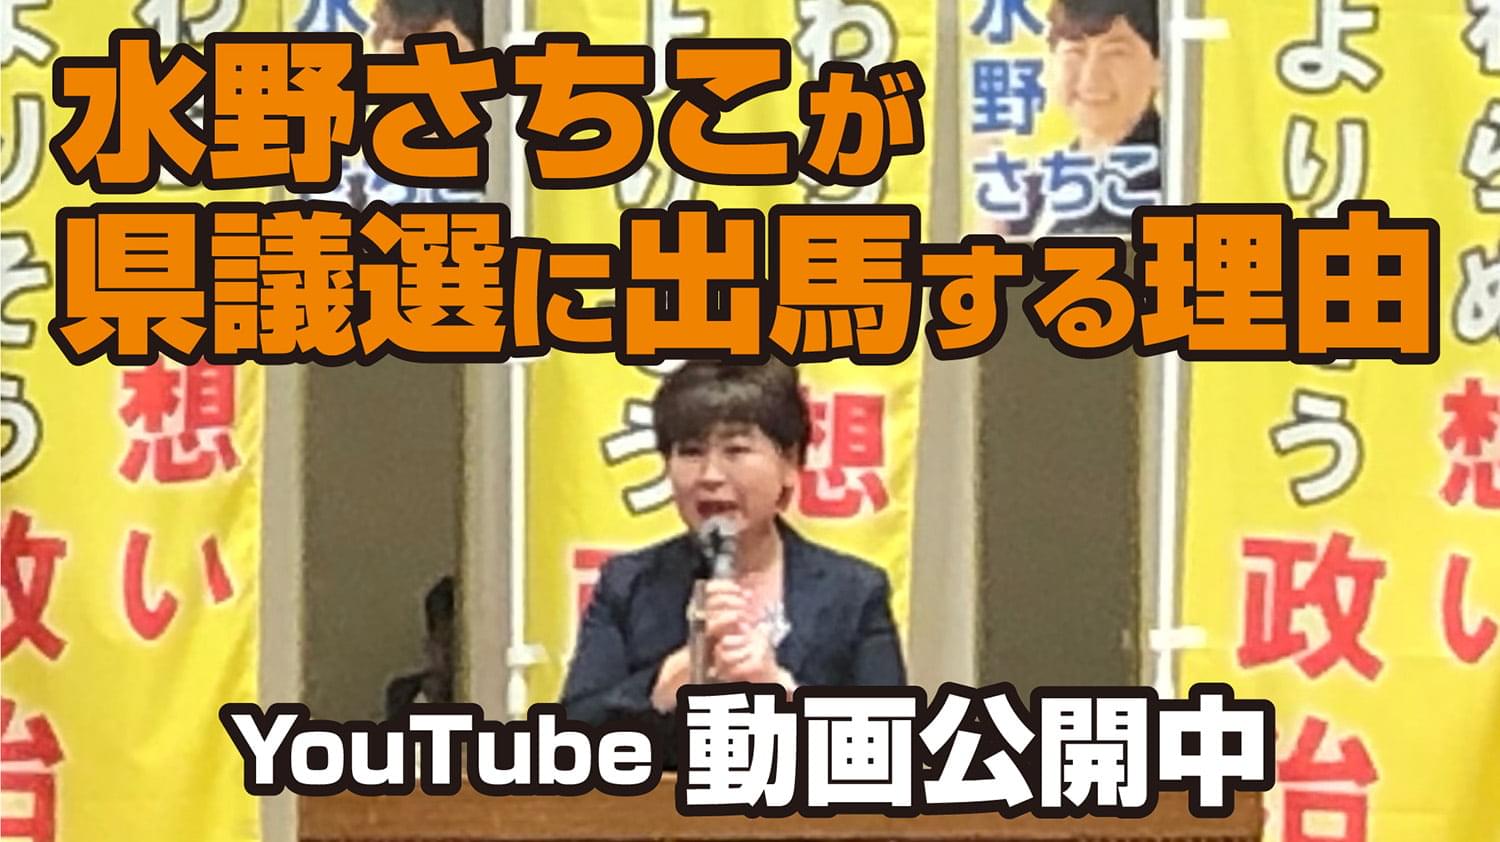 水野さちこが県議選に出馬する理由 YouTubeにて動画公開中